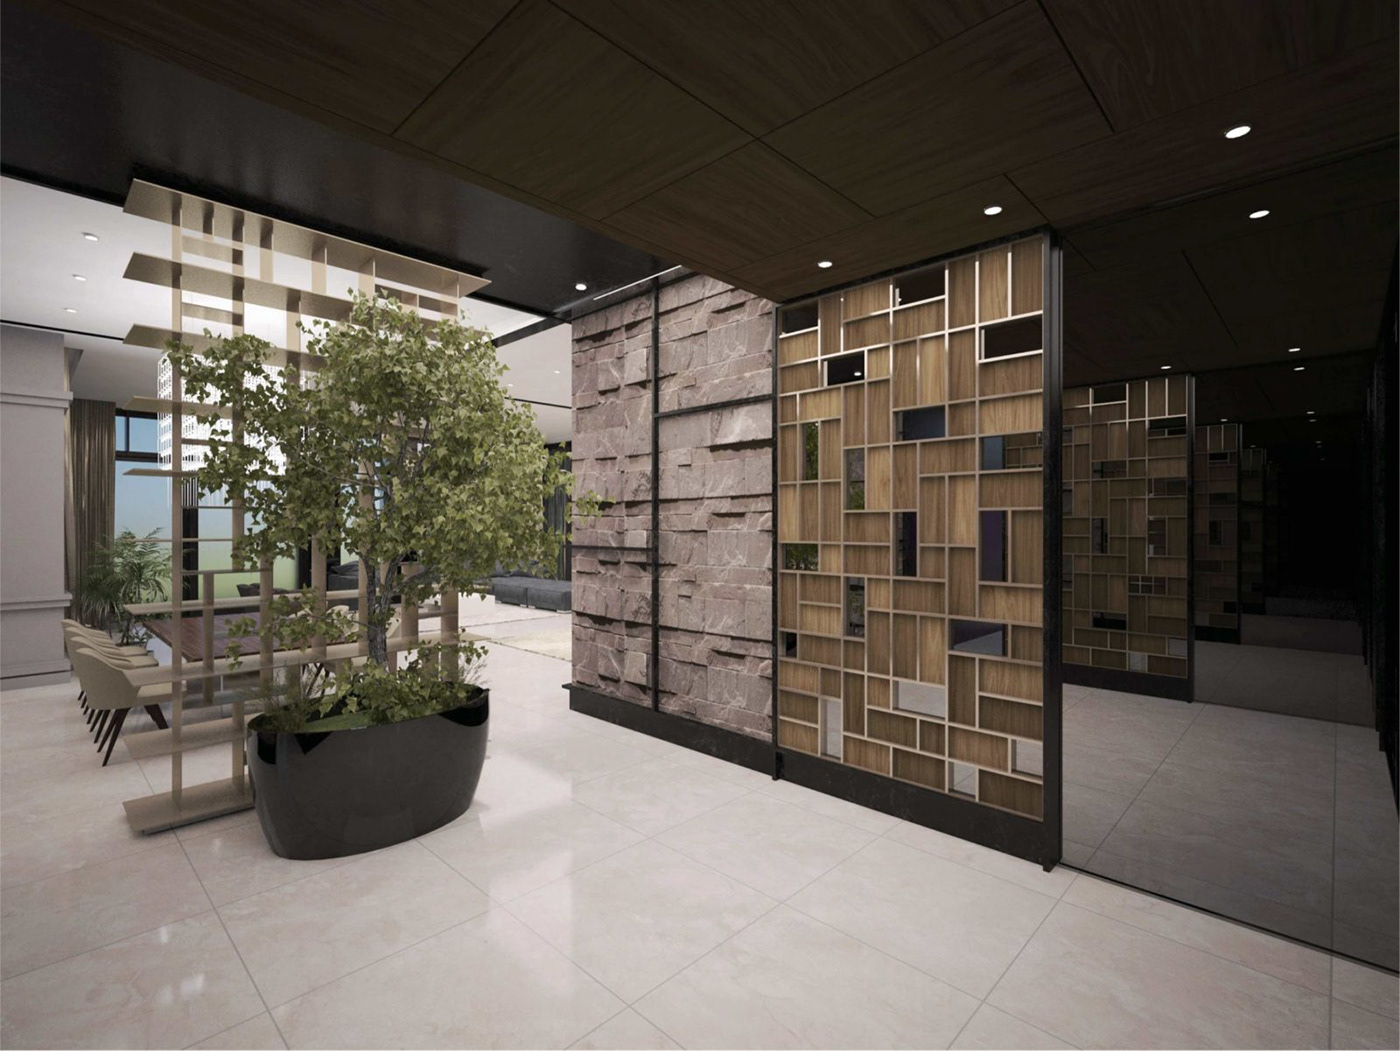 дизайн интерьера интерьер дома райт парк япония японский дизайн японский стиль